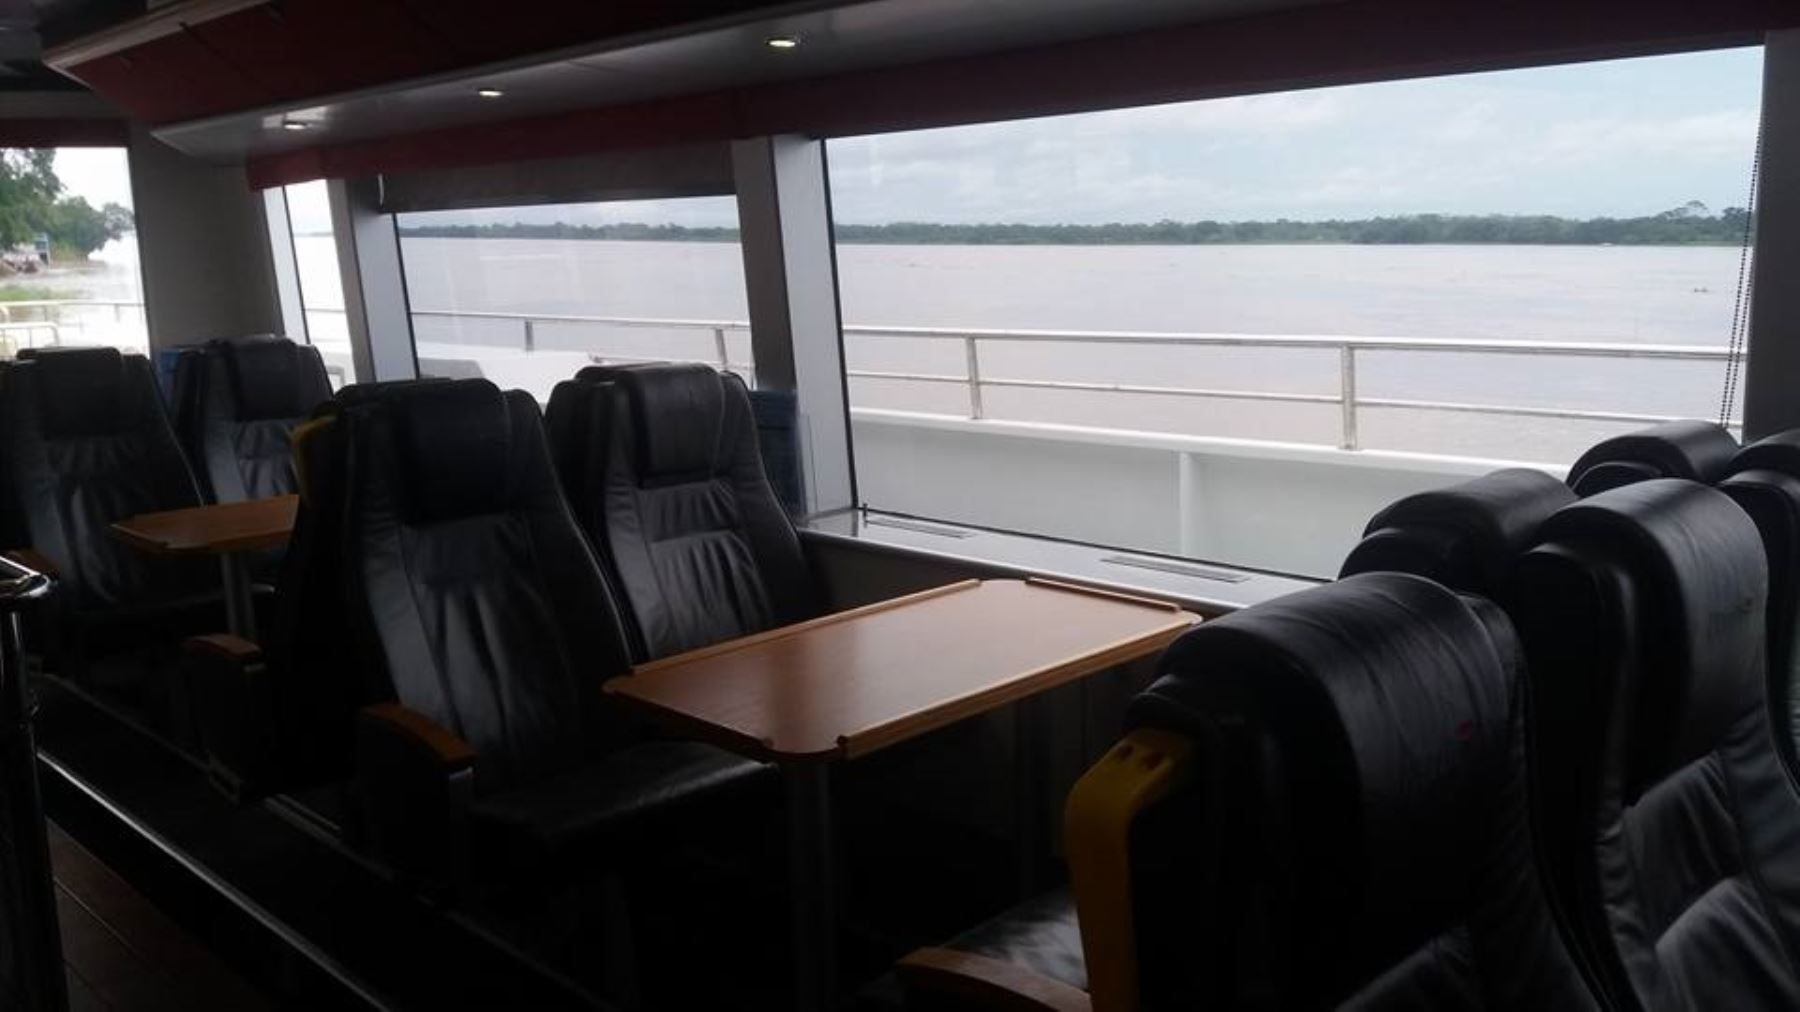 Cada semana el Ferry Amazónico hará 3 viajes de ida y vuelta por el río Amazonas. En esta ruta, se transportarán alrededor de 100,000 pasajeros cada año.